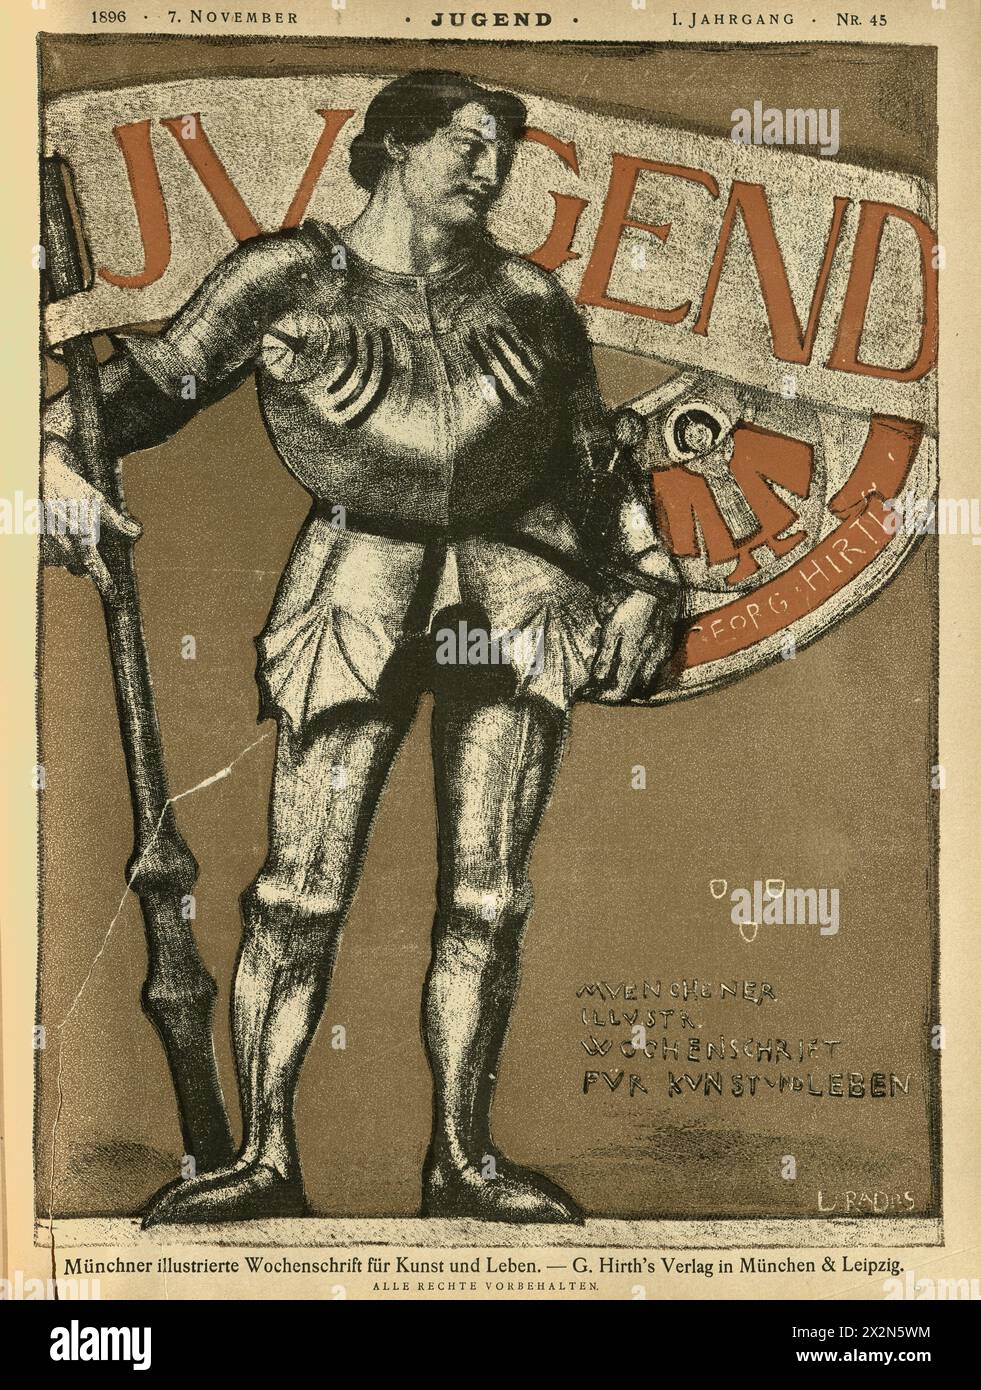 Couverture de Jugend, Knight in Armour, German, Jugendstil, Art Nouveau, années 1890, XIXe siècle Banque D'Images